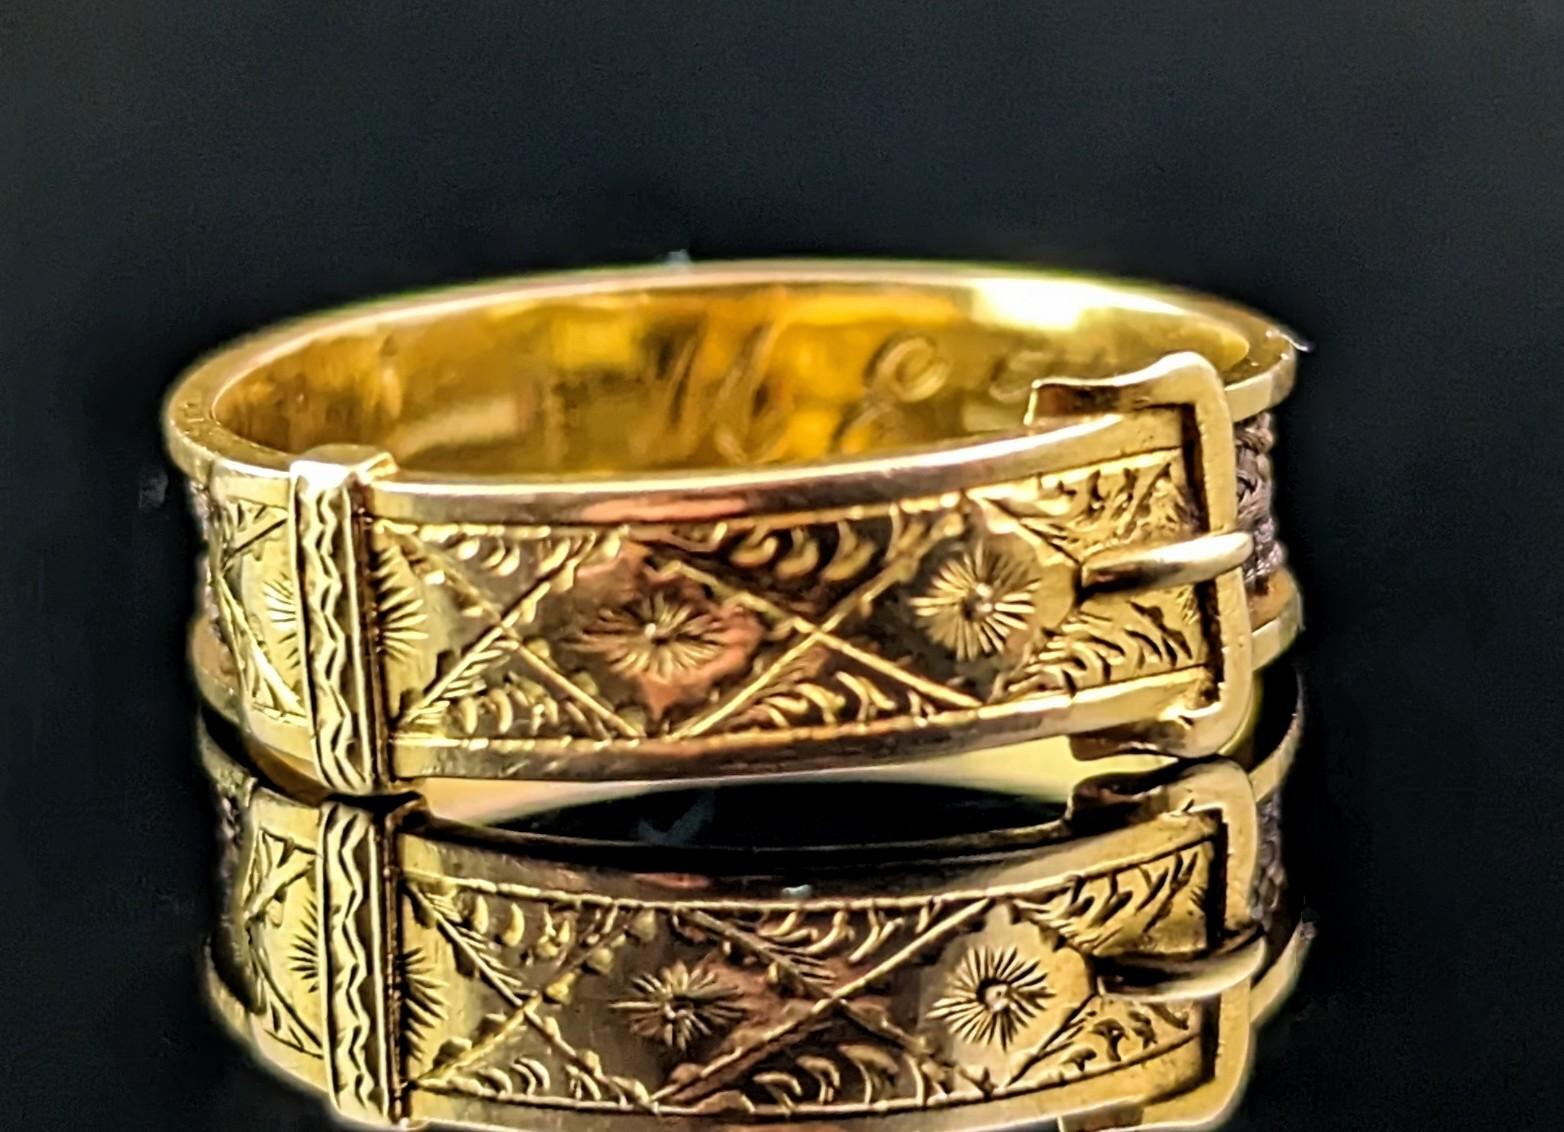 Un superbe anneau de deuil antique de l'époque victorienne.

Un riche bracelet en or jaune 18ct avec des panneaux latéraux découpés représentant des cheveux bruns finement tressés.

L'anneau en or est gravé et se termine sur le devant par un motif